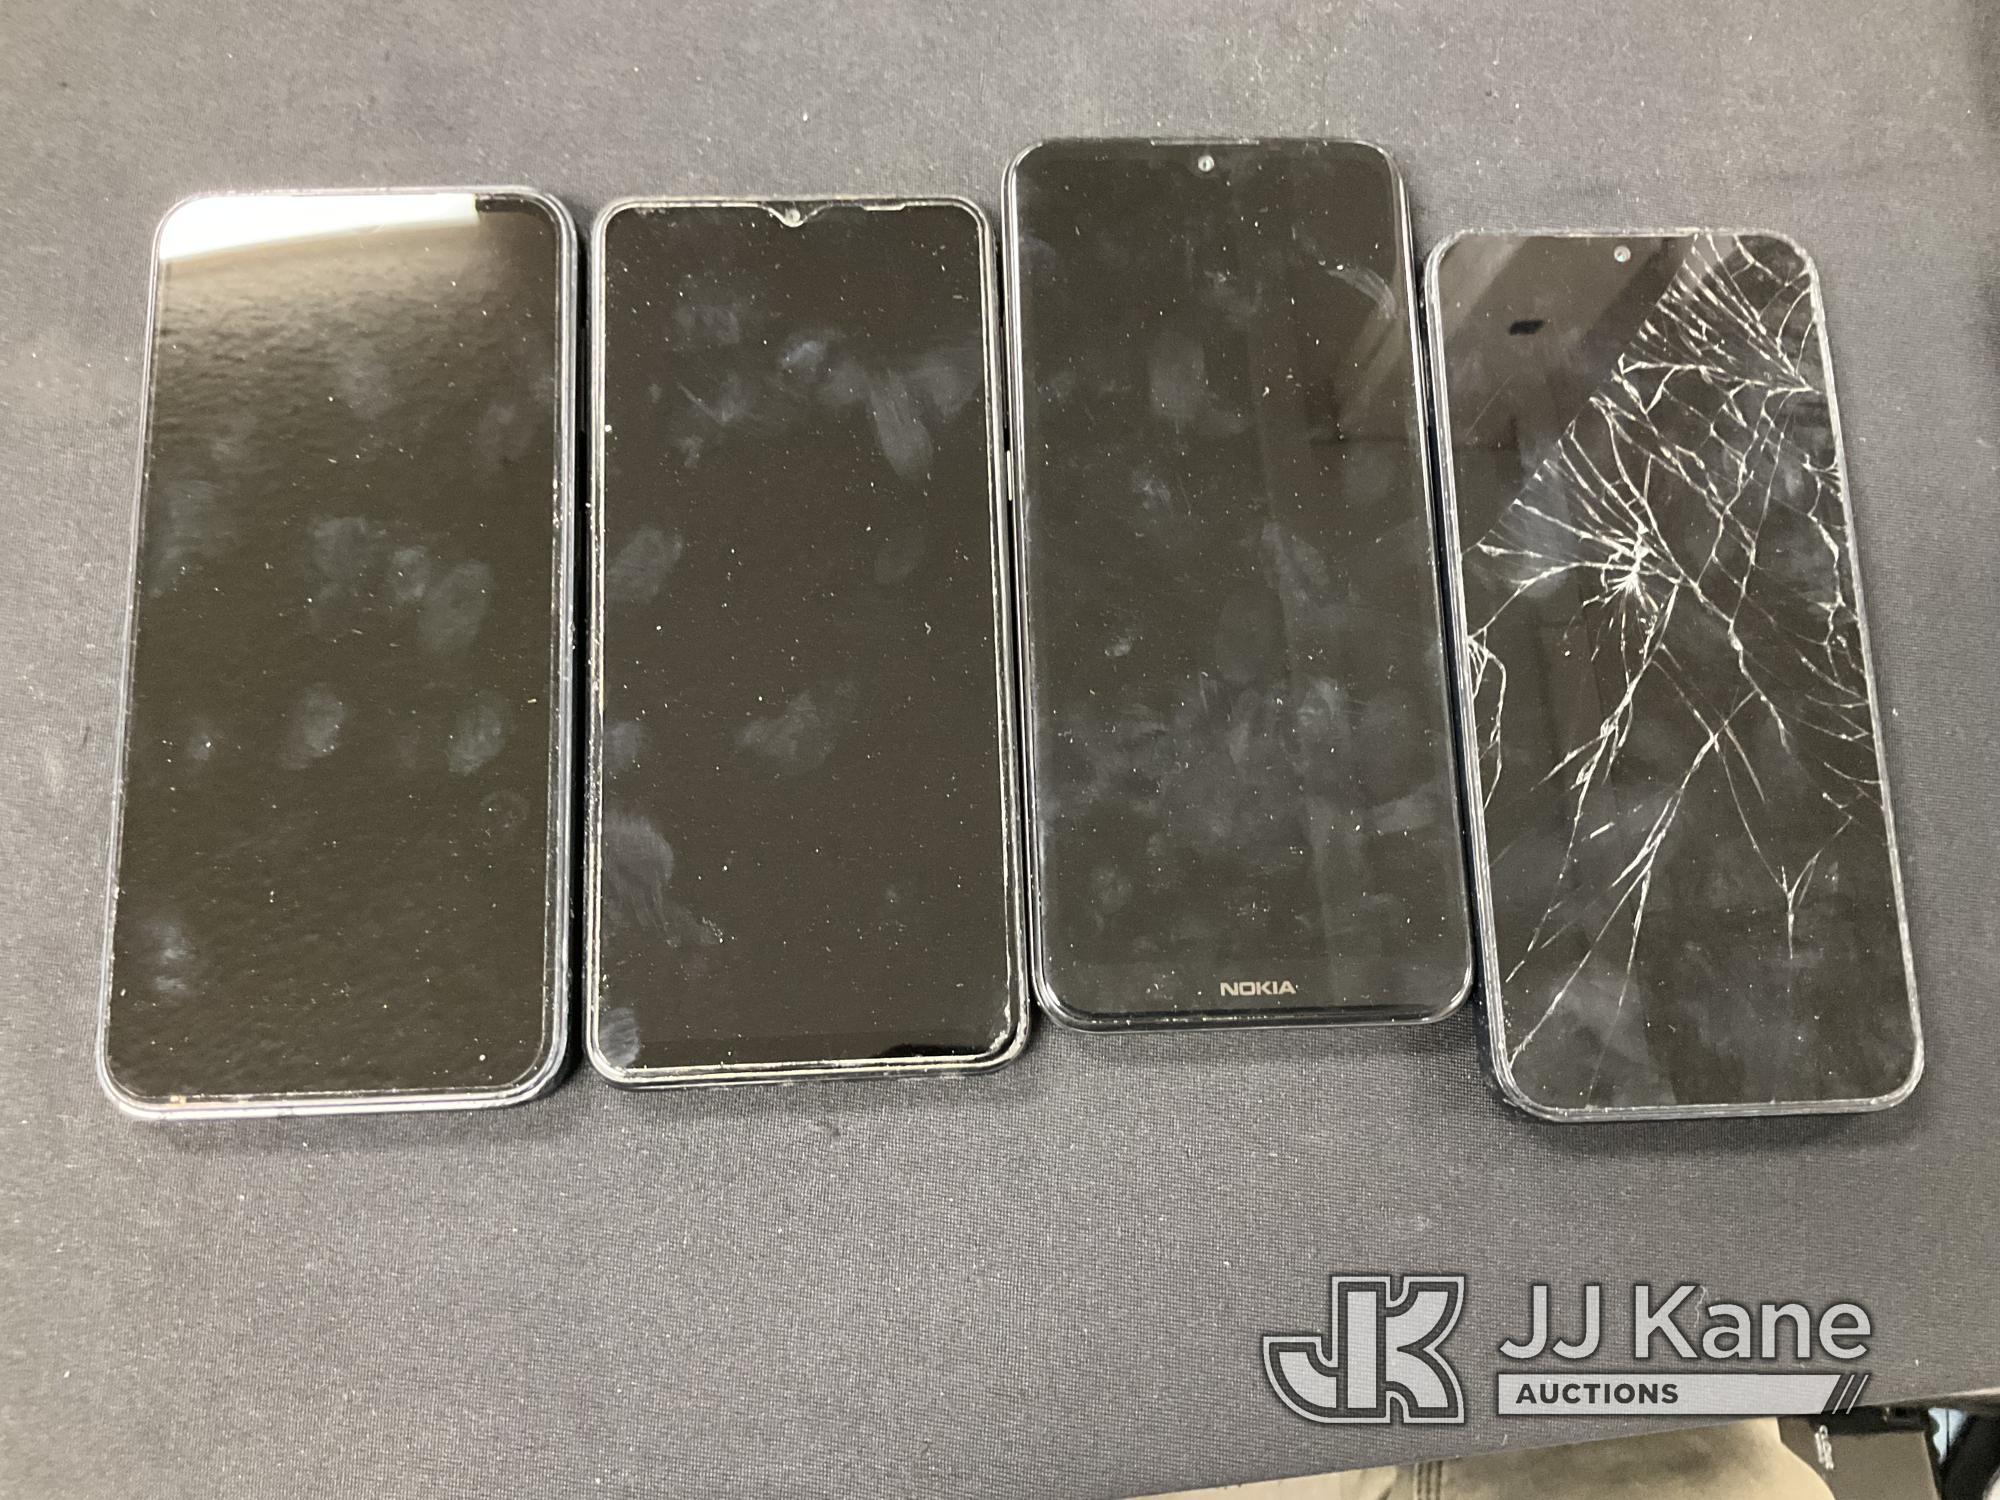 (Jurupa Valley, CA) 24 Phones Used